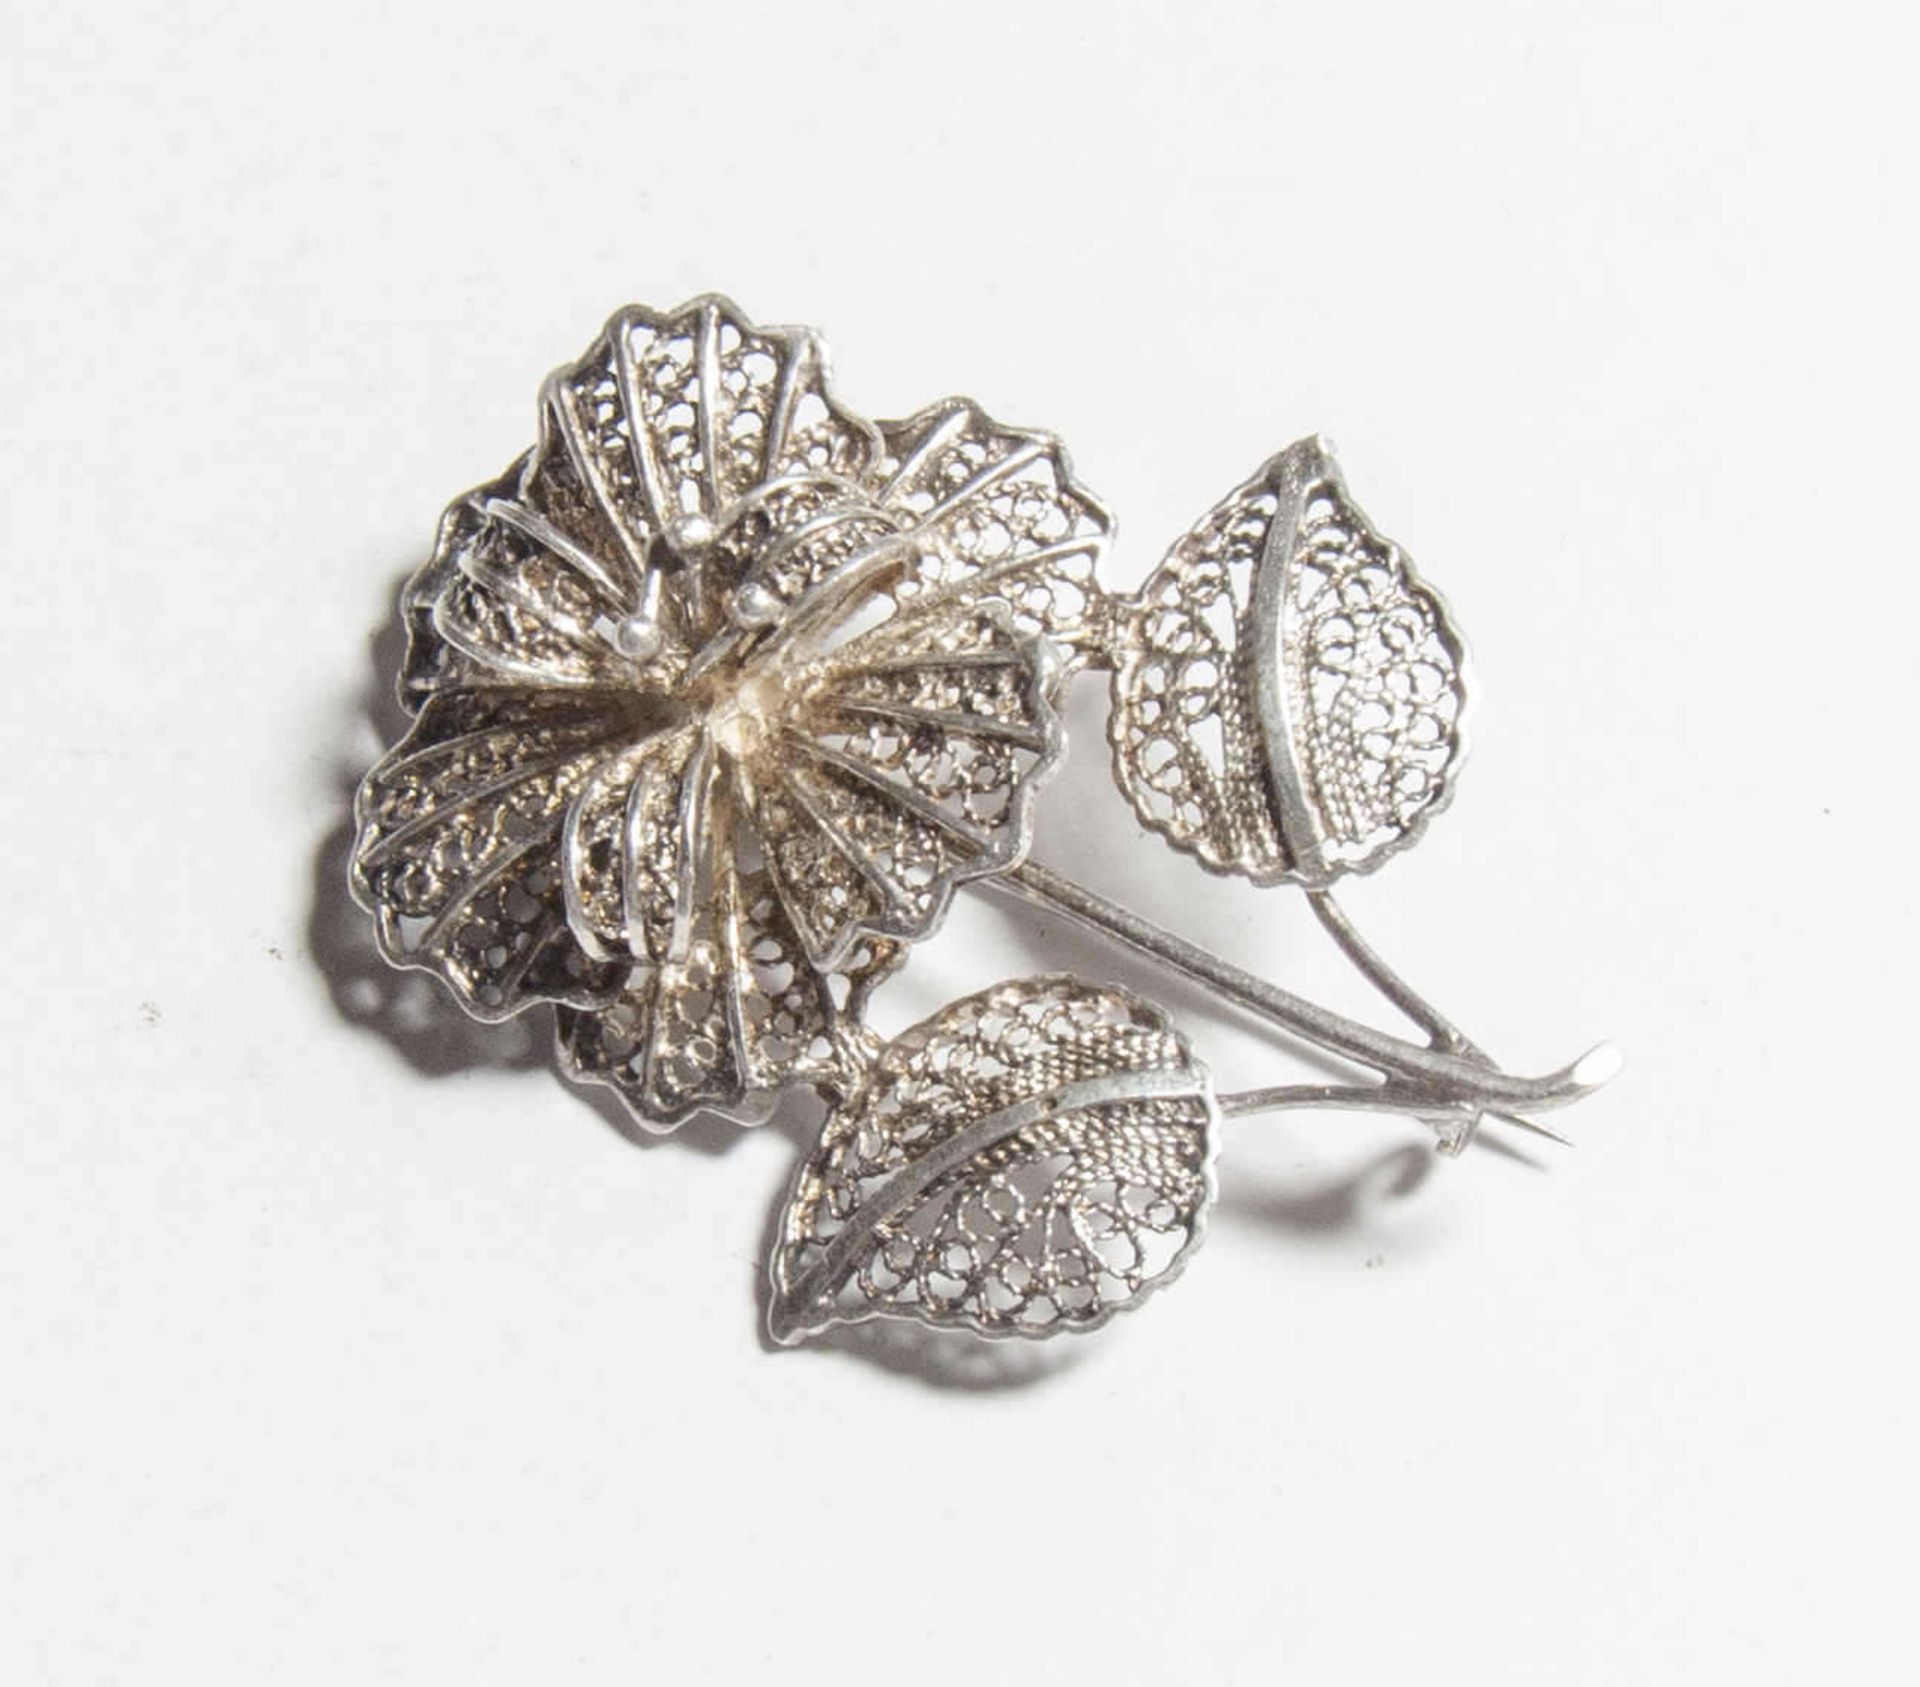 Silberbrosche in Form einer Blume, Länge ca. 5,5 cm, Gewicht ca. 9,7 grSilver brooch in the form